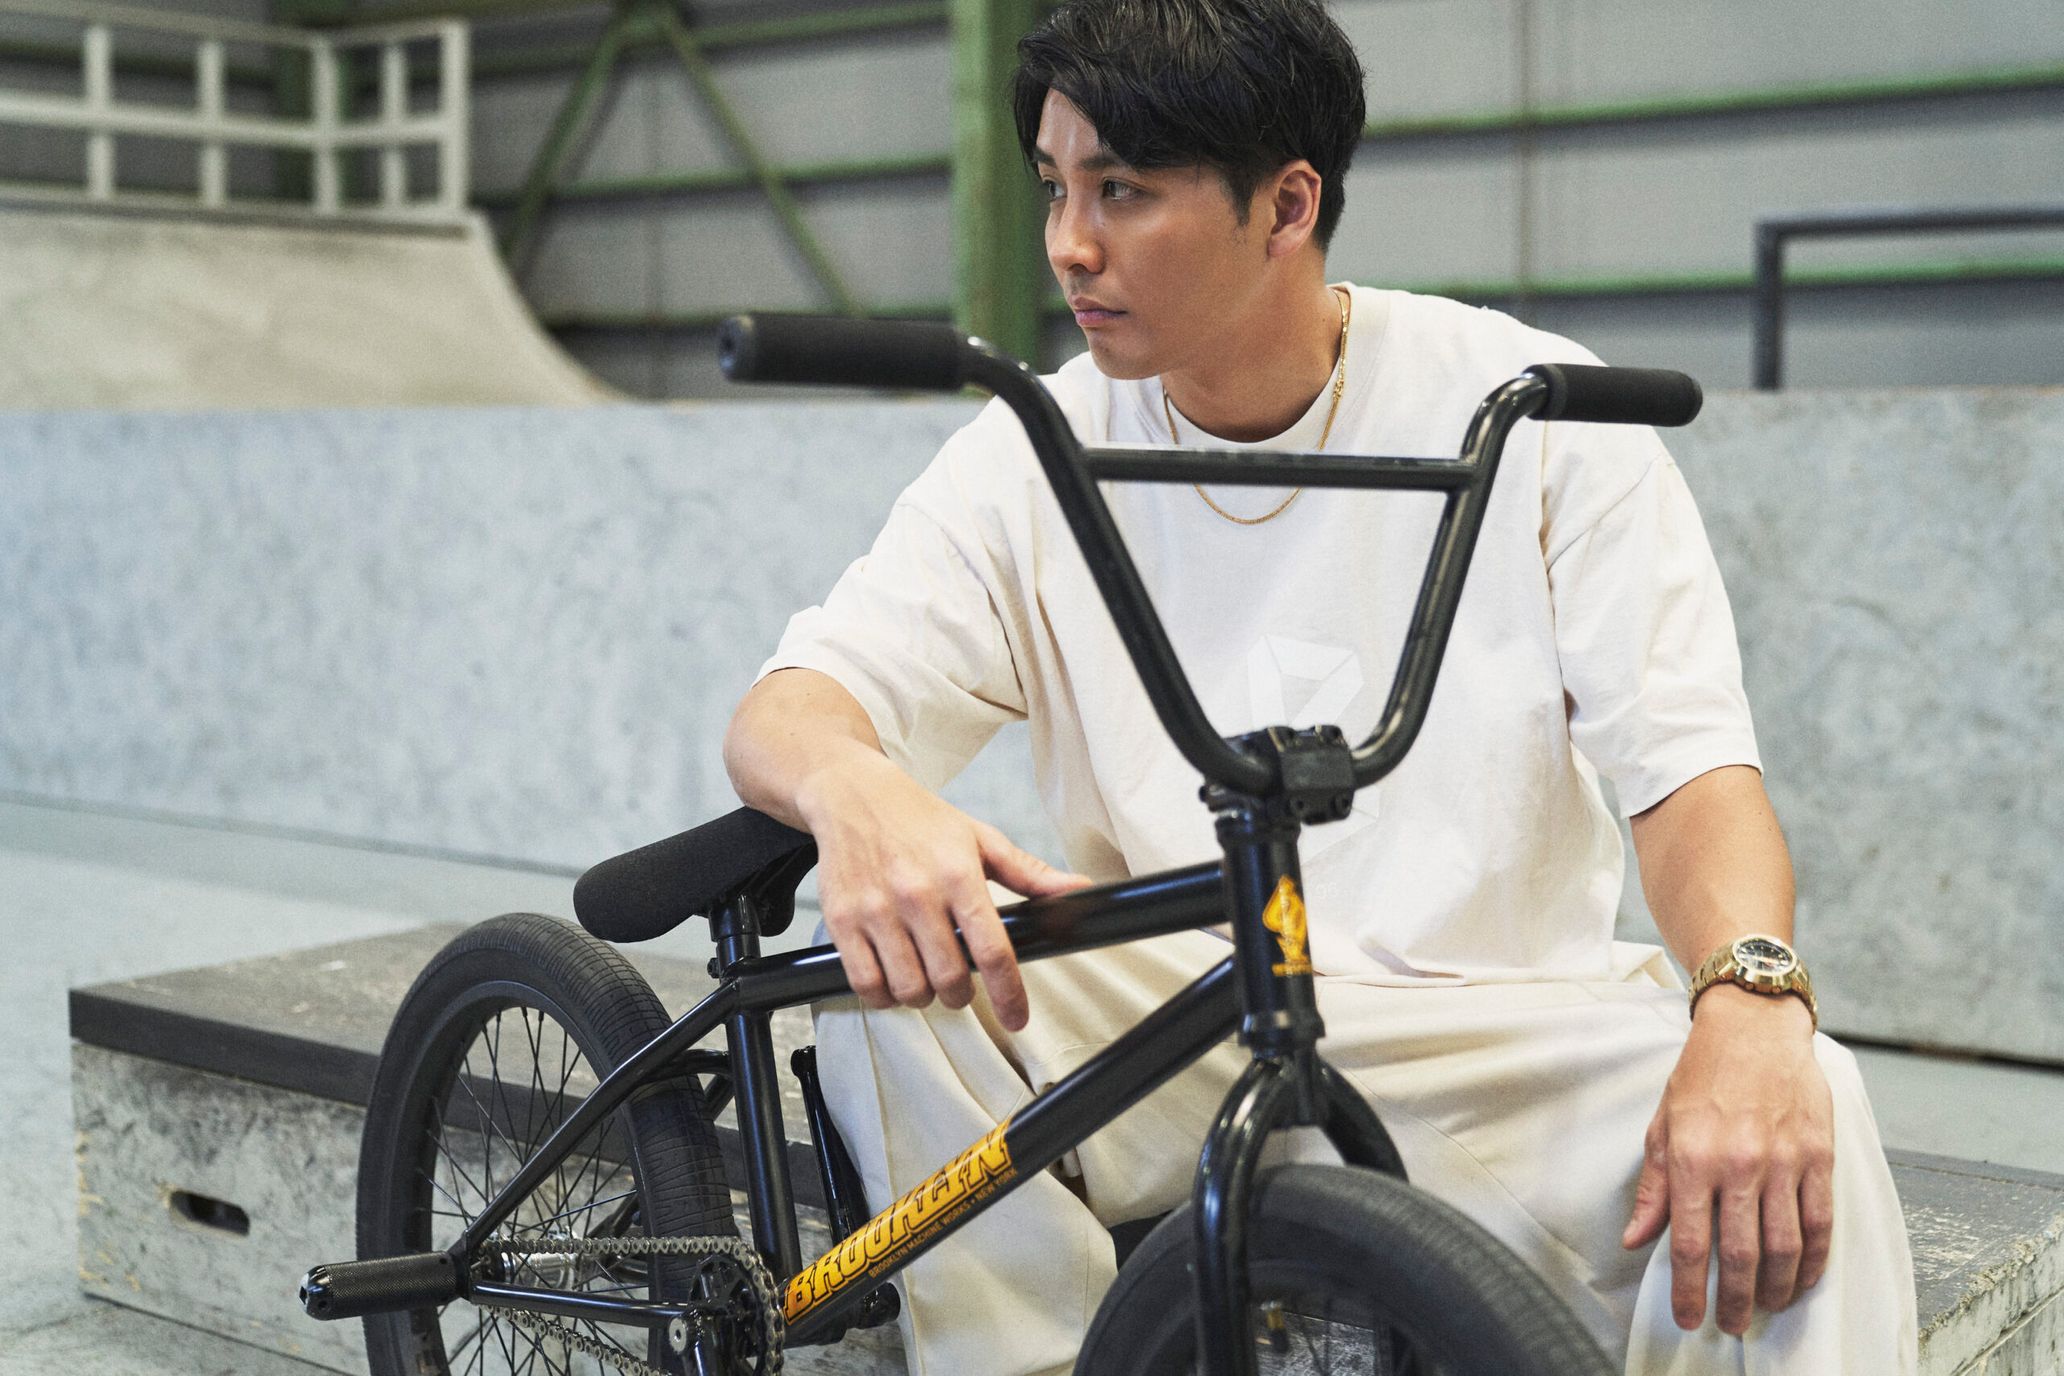 BMX Rider Yohei Uchino on the past 20 years of his career and